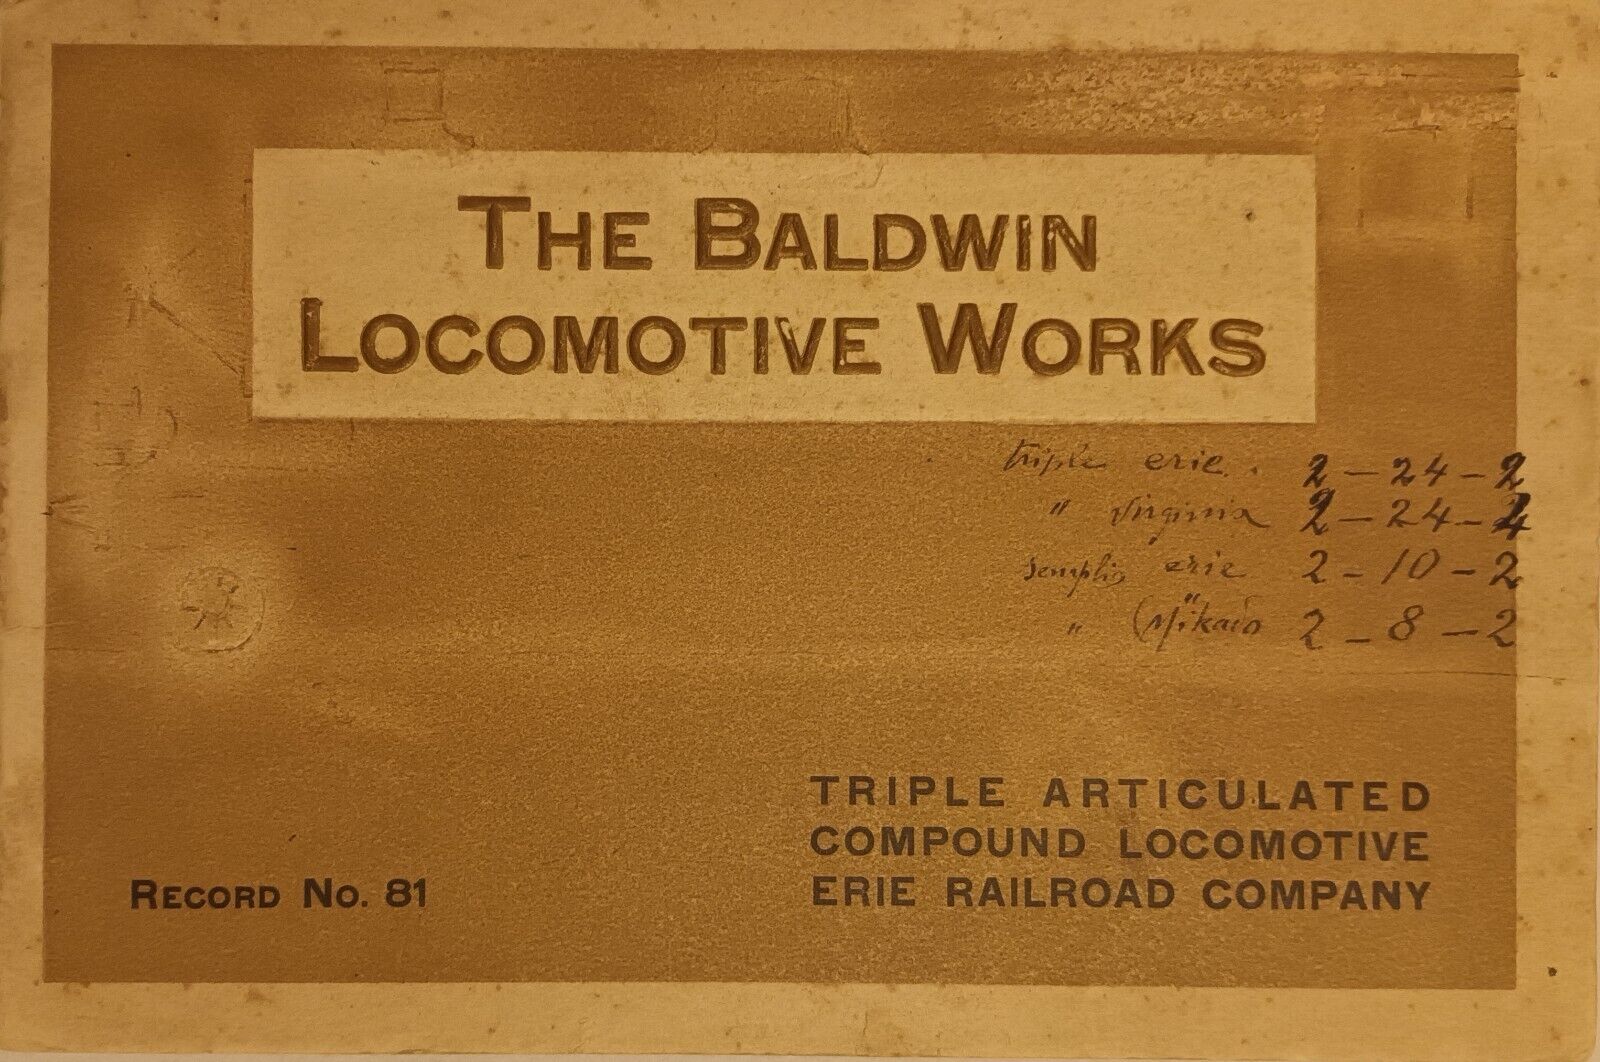 Original, antique edition, The Baldwin Locomotive Works, Record No. 81, 1915 